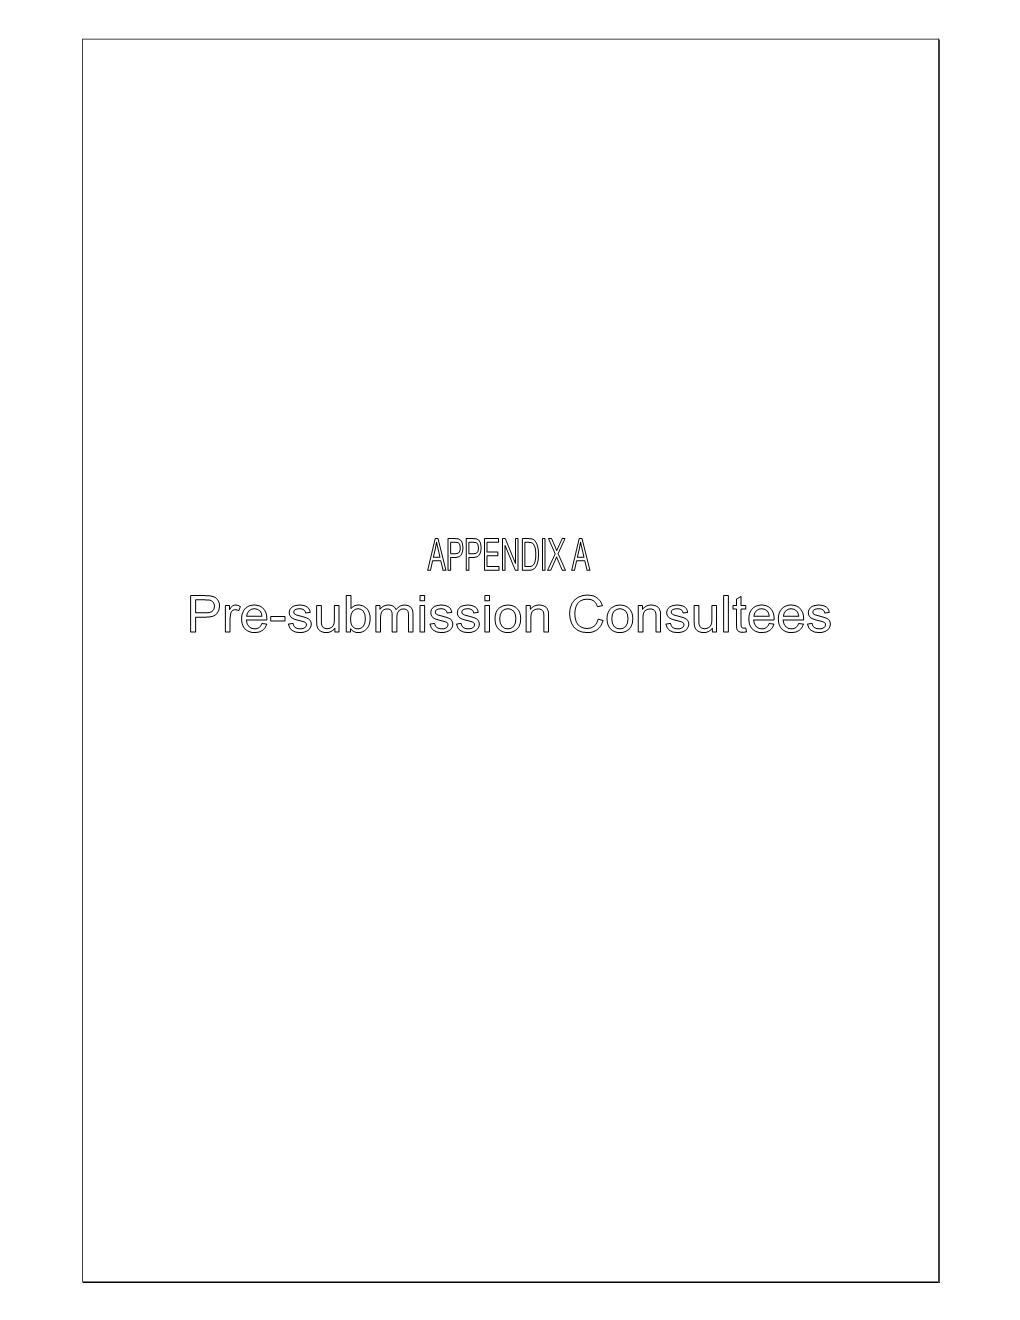 SCI Appendix a Pre-Submission Consultees